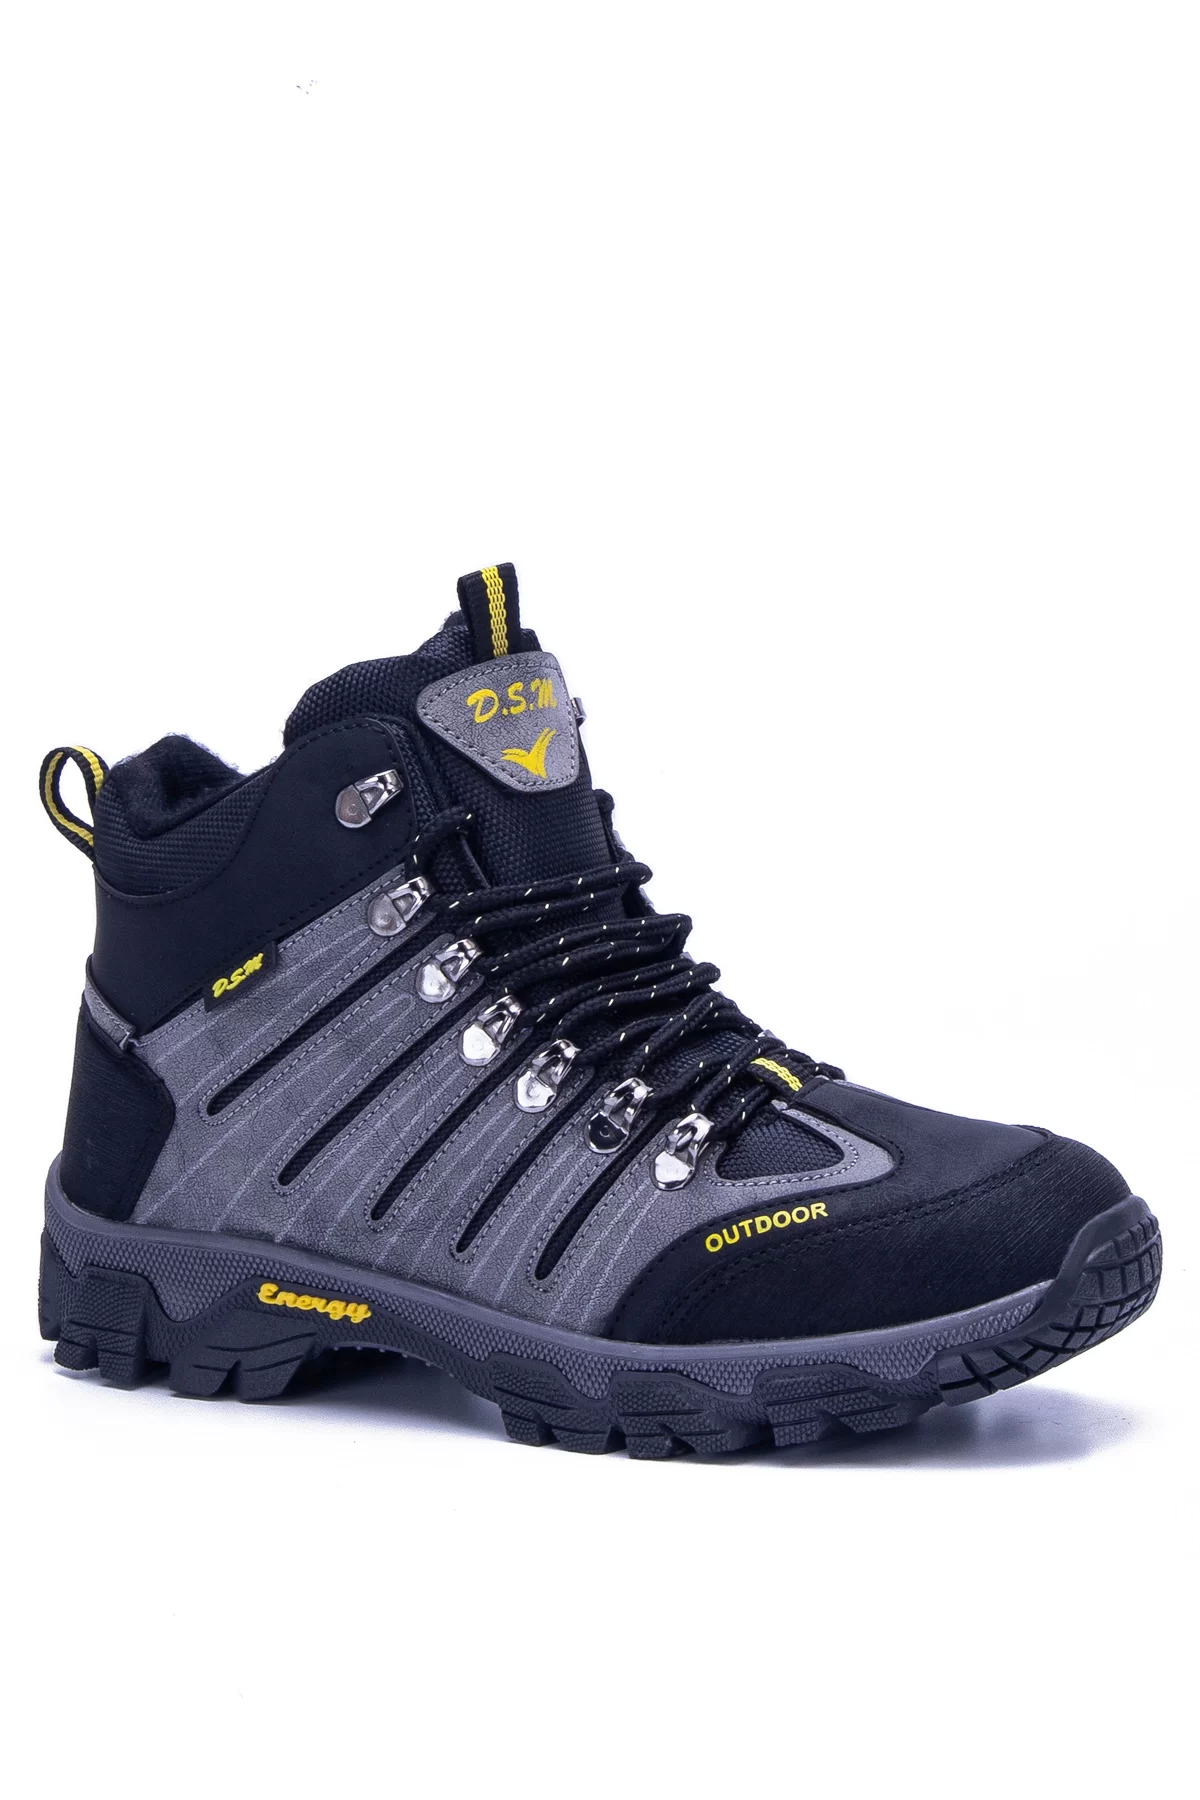 Unisex Outdoor Ayakkabı DSM2 - Füme